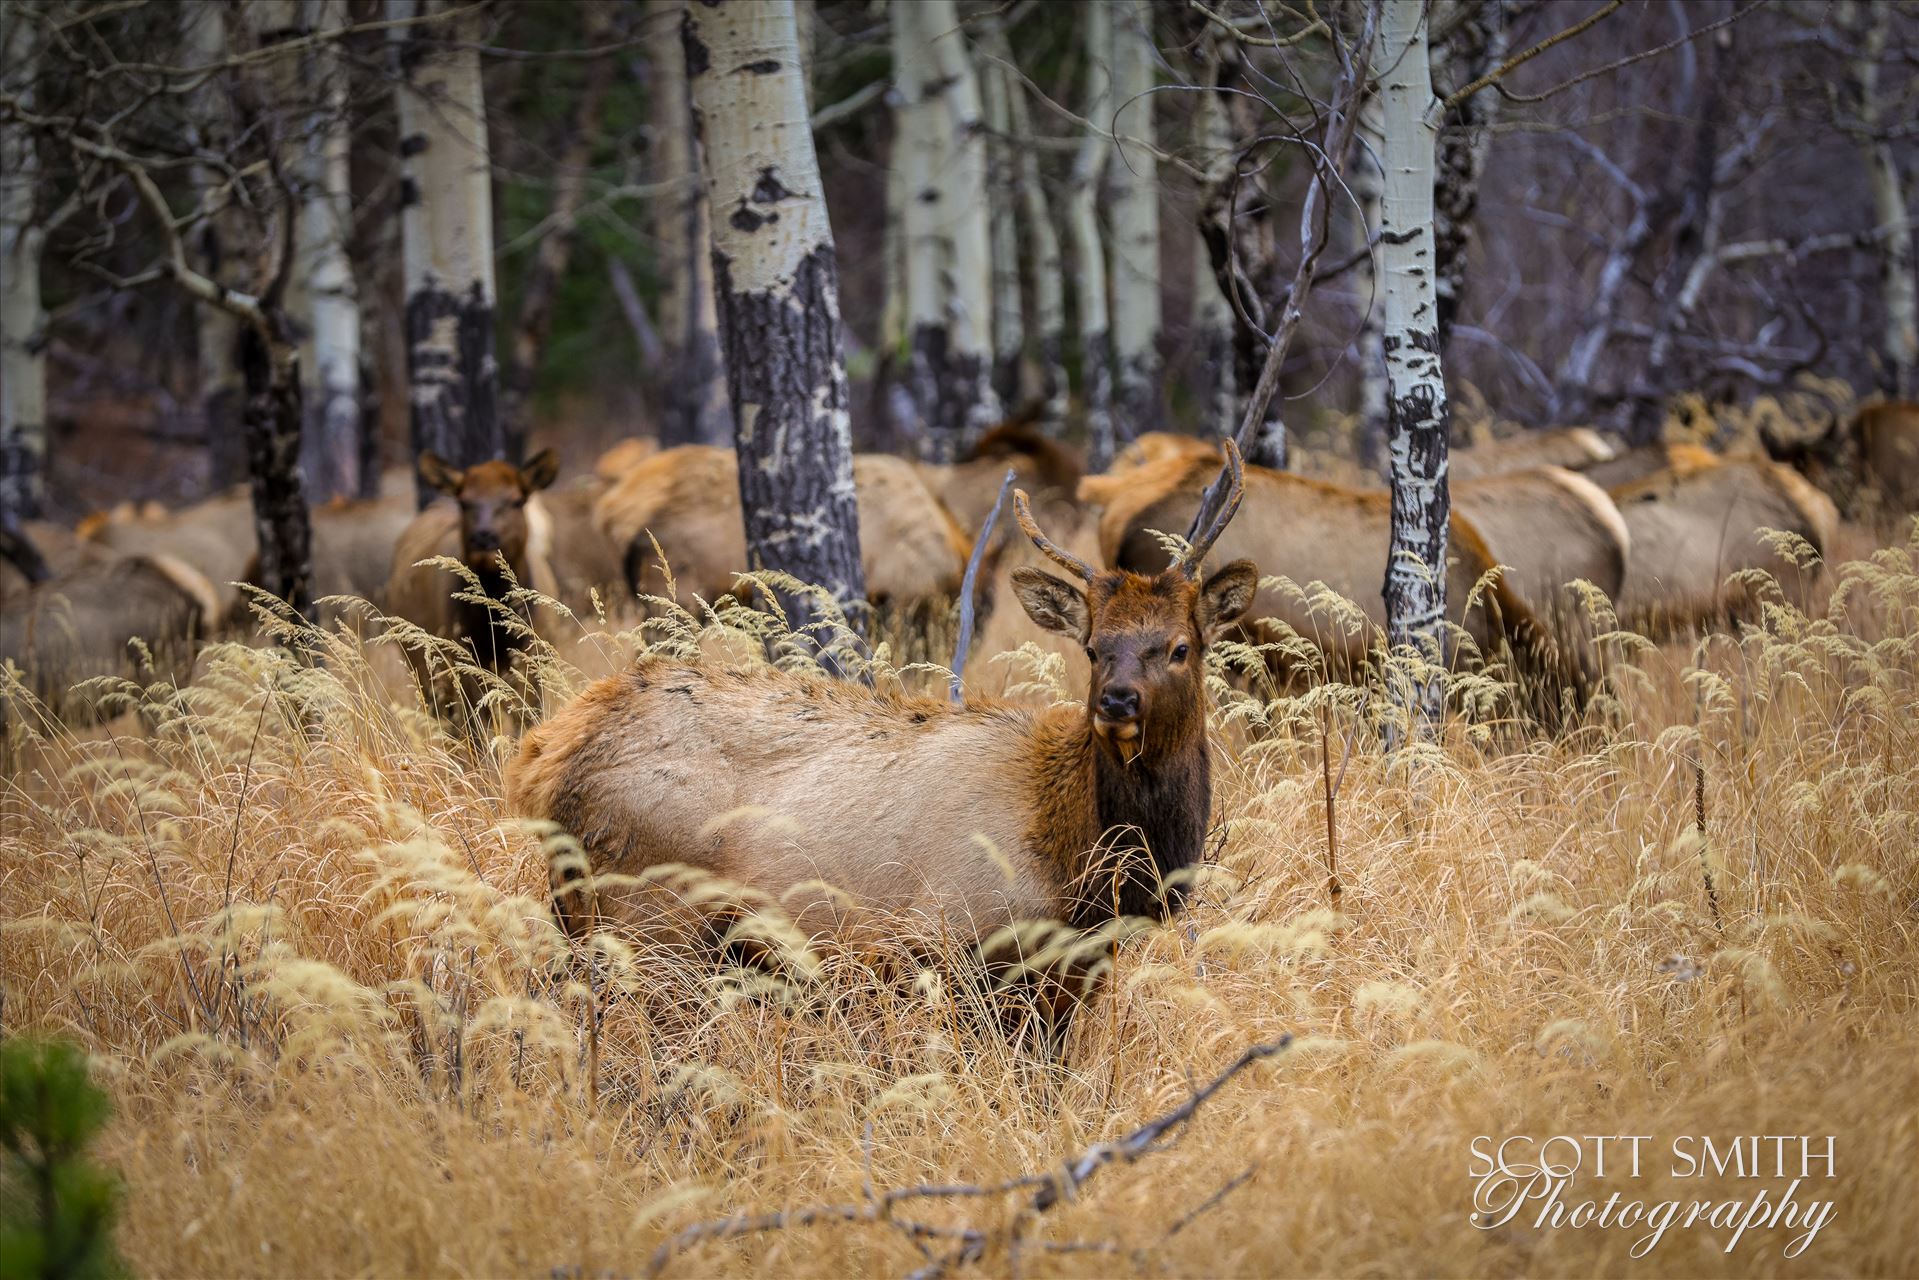 Sunday Elk No 01 - A heard of Elk near the entrance to Rocky Mountain National Park, Estes Park, Colorado. by Scott Smith Photos